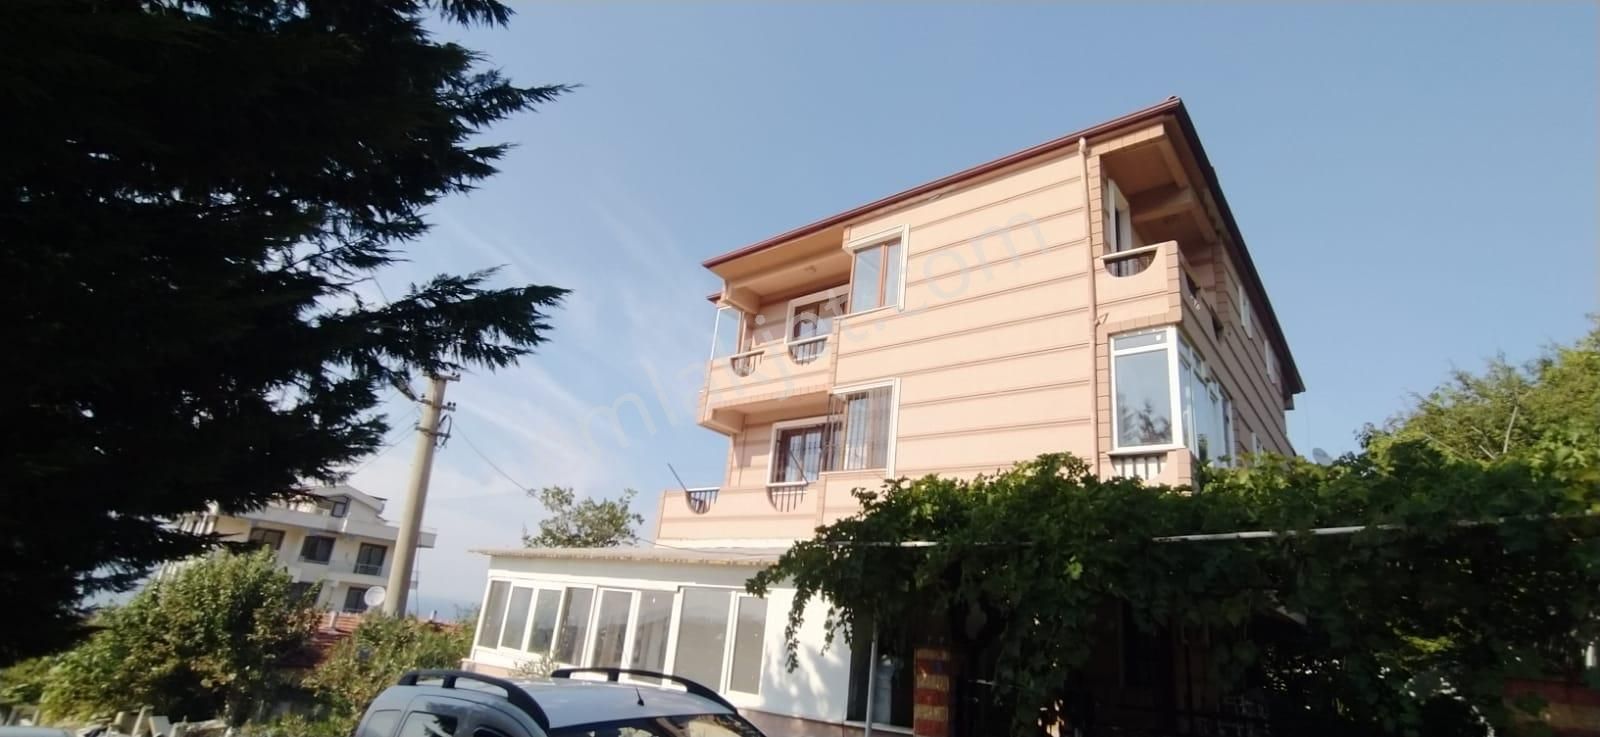 Çınarcık Çamlık Satılık Daire  Cevher İnşaat'tan Satılık Çok Ucuz Kelepir Villa